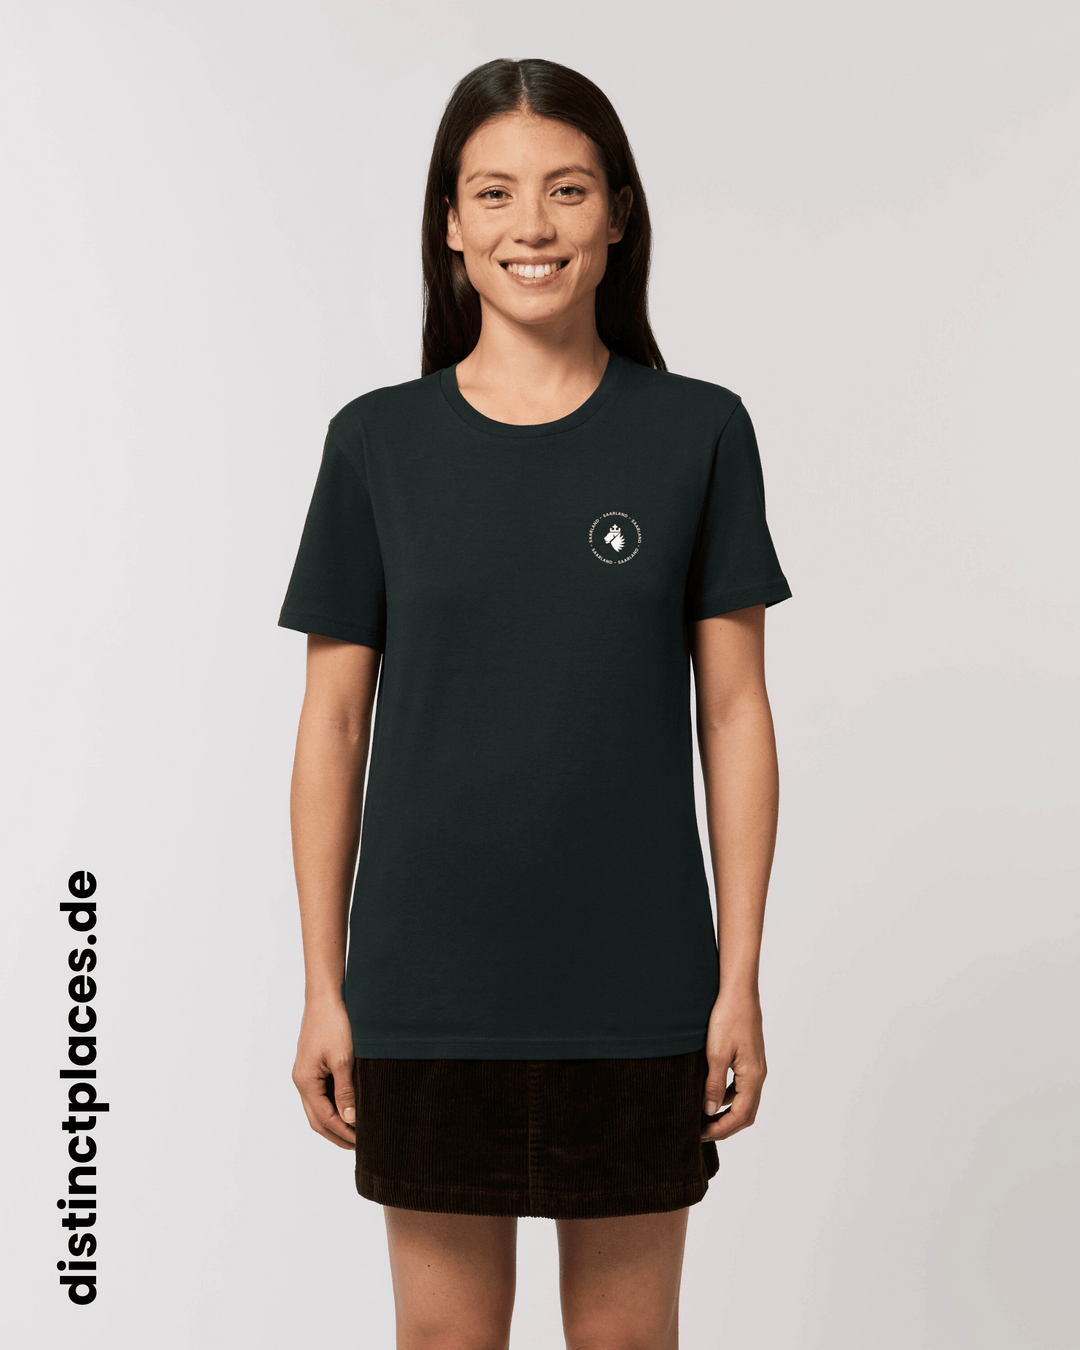 Frau von vorne trägt schwarzes fairtrade, vegan und bio-baumwoll T-Shirt mit einem minimalistischem weißen Logo, beziehungsweise Wappen und Schriftzug für Saarland